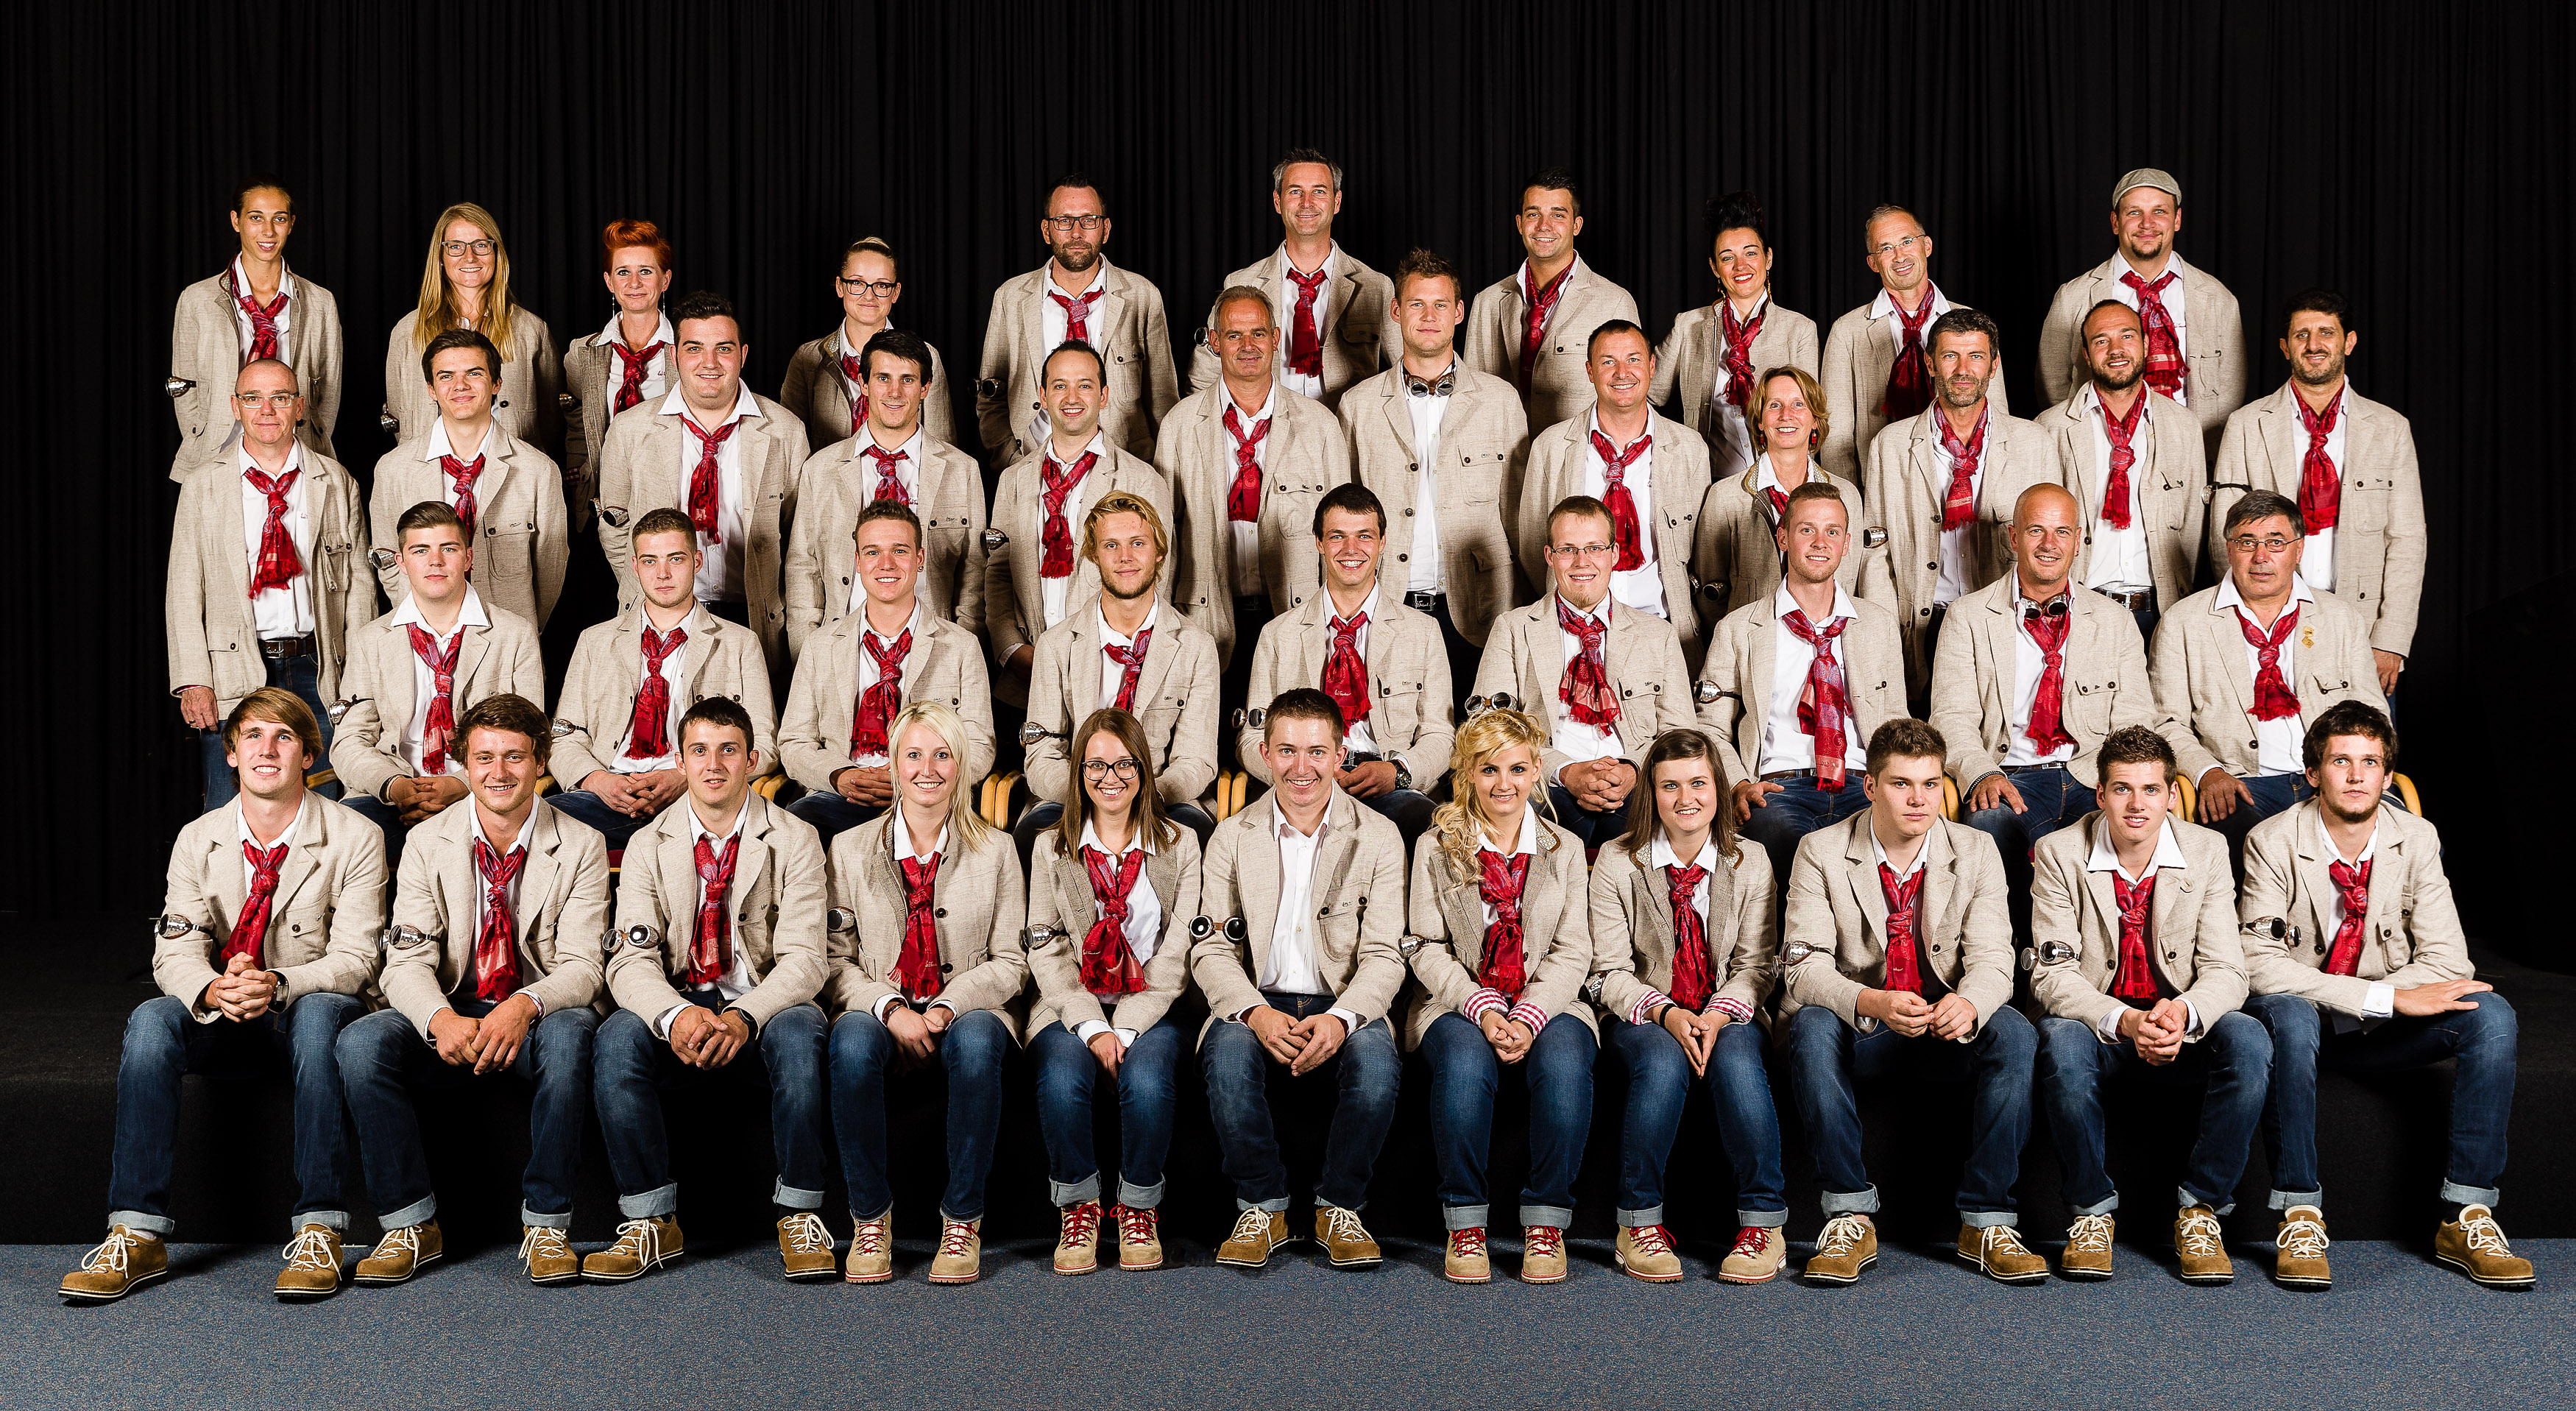 Gruppenfoto des WorldSkills Team Italy Sao Paulo